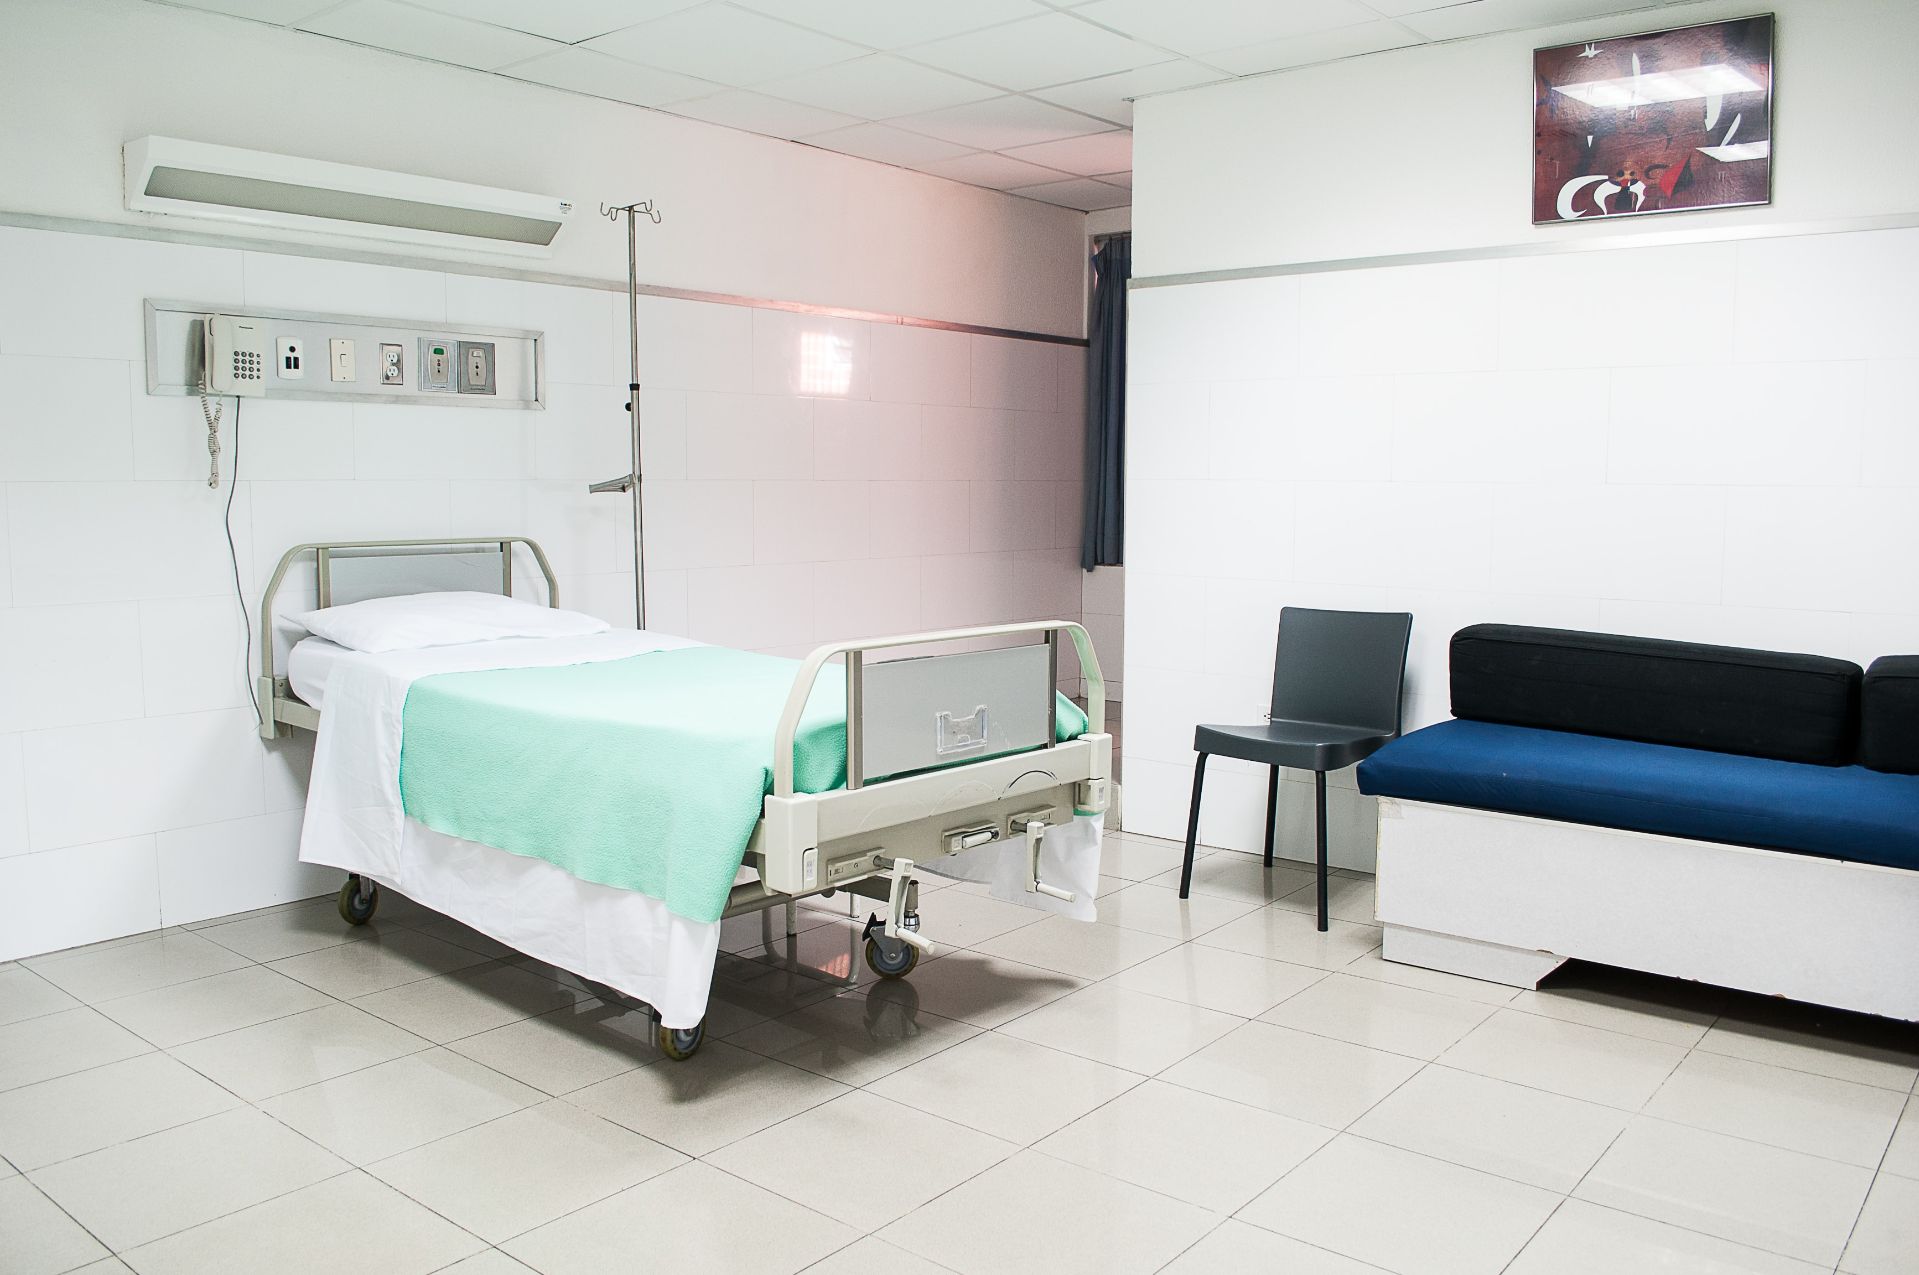 Autoritățile caută soluţii pentru operaţionalizarea secţiei ATI de la Spitalul Witting